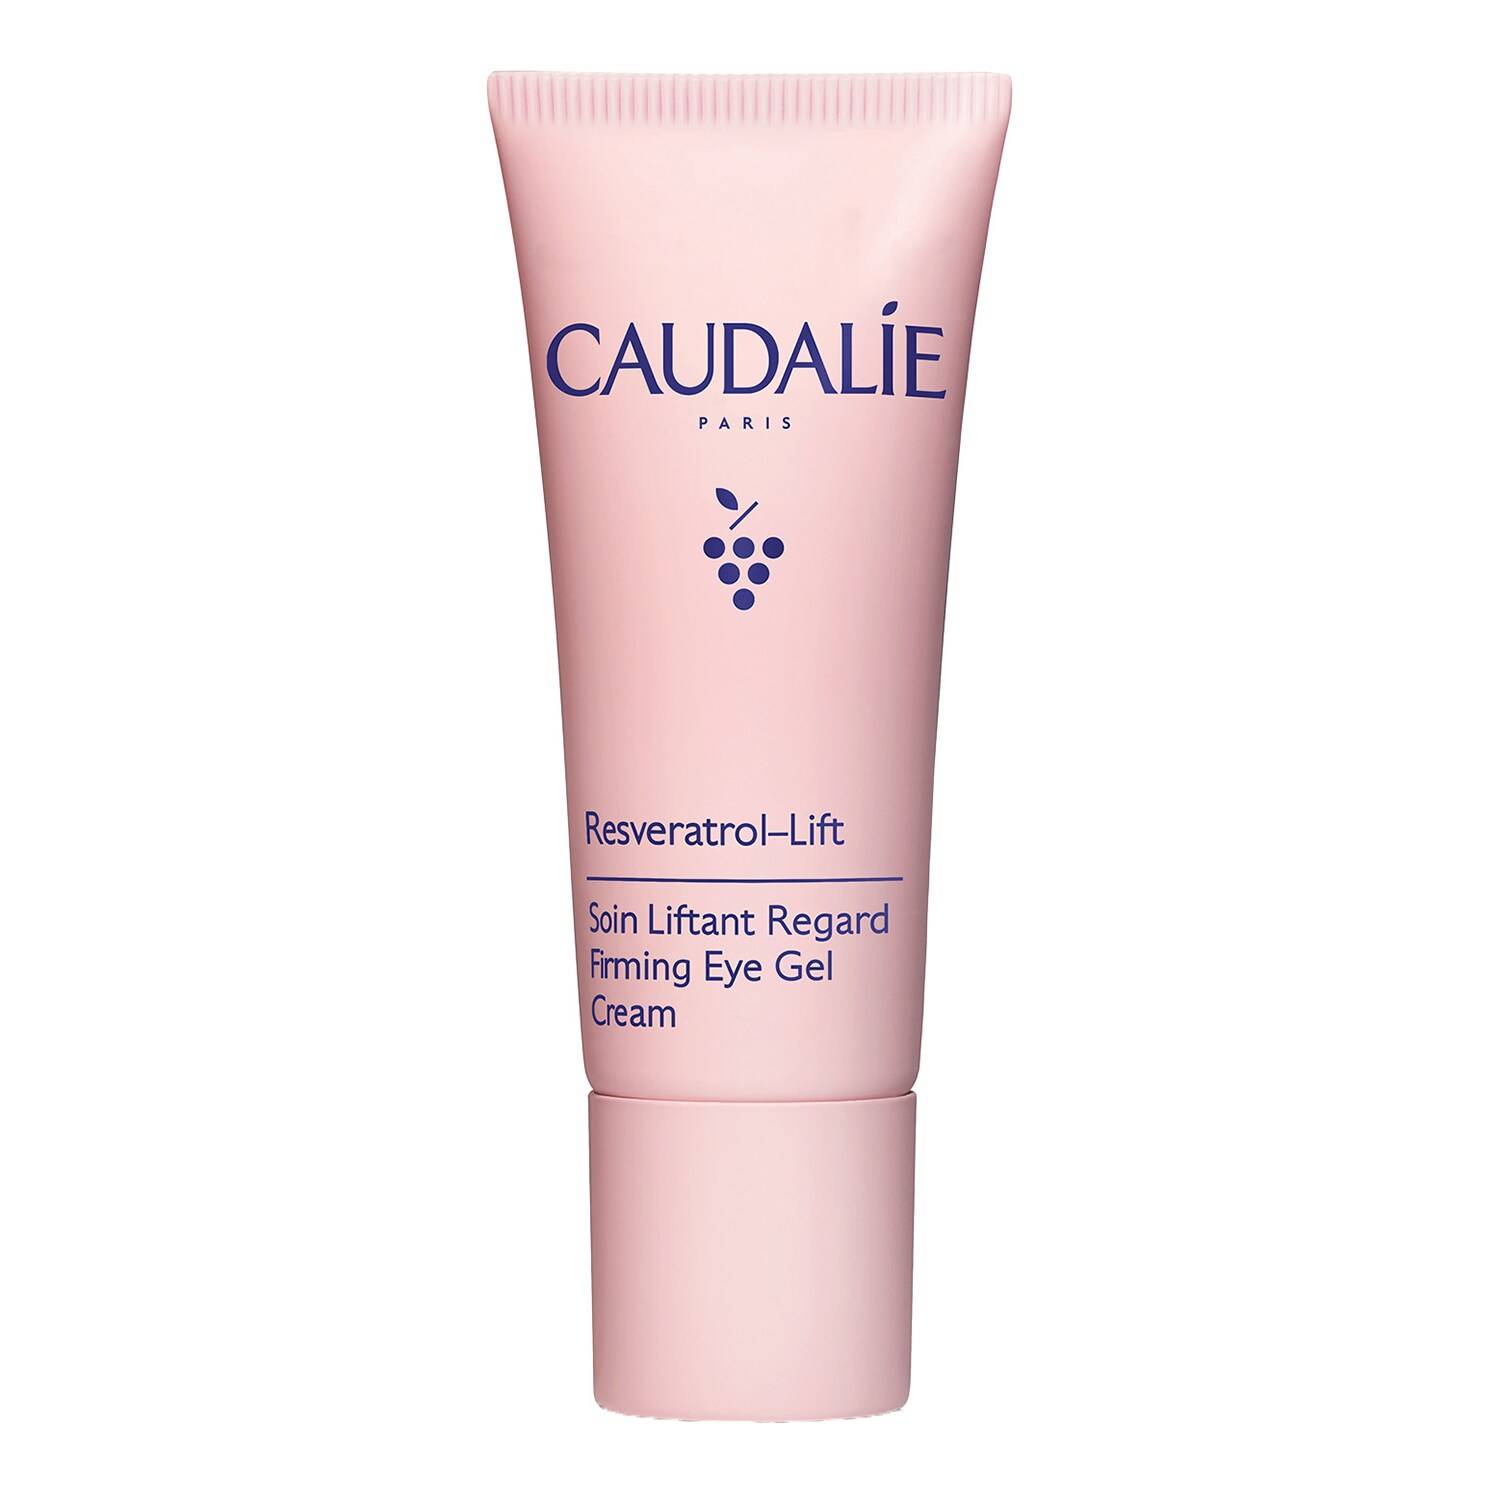 CAUDALIE Resveratrol-Lift Firming Eye Gel Cream 15ml